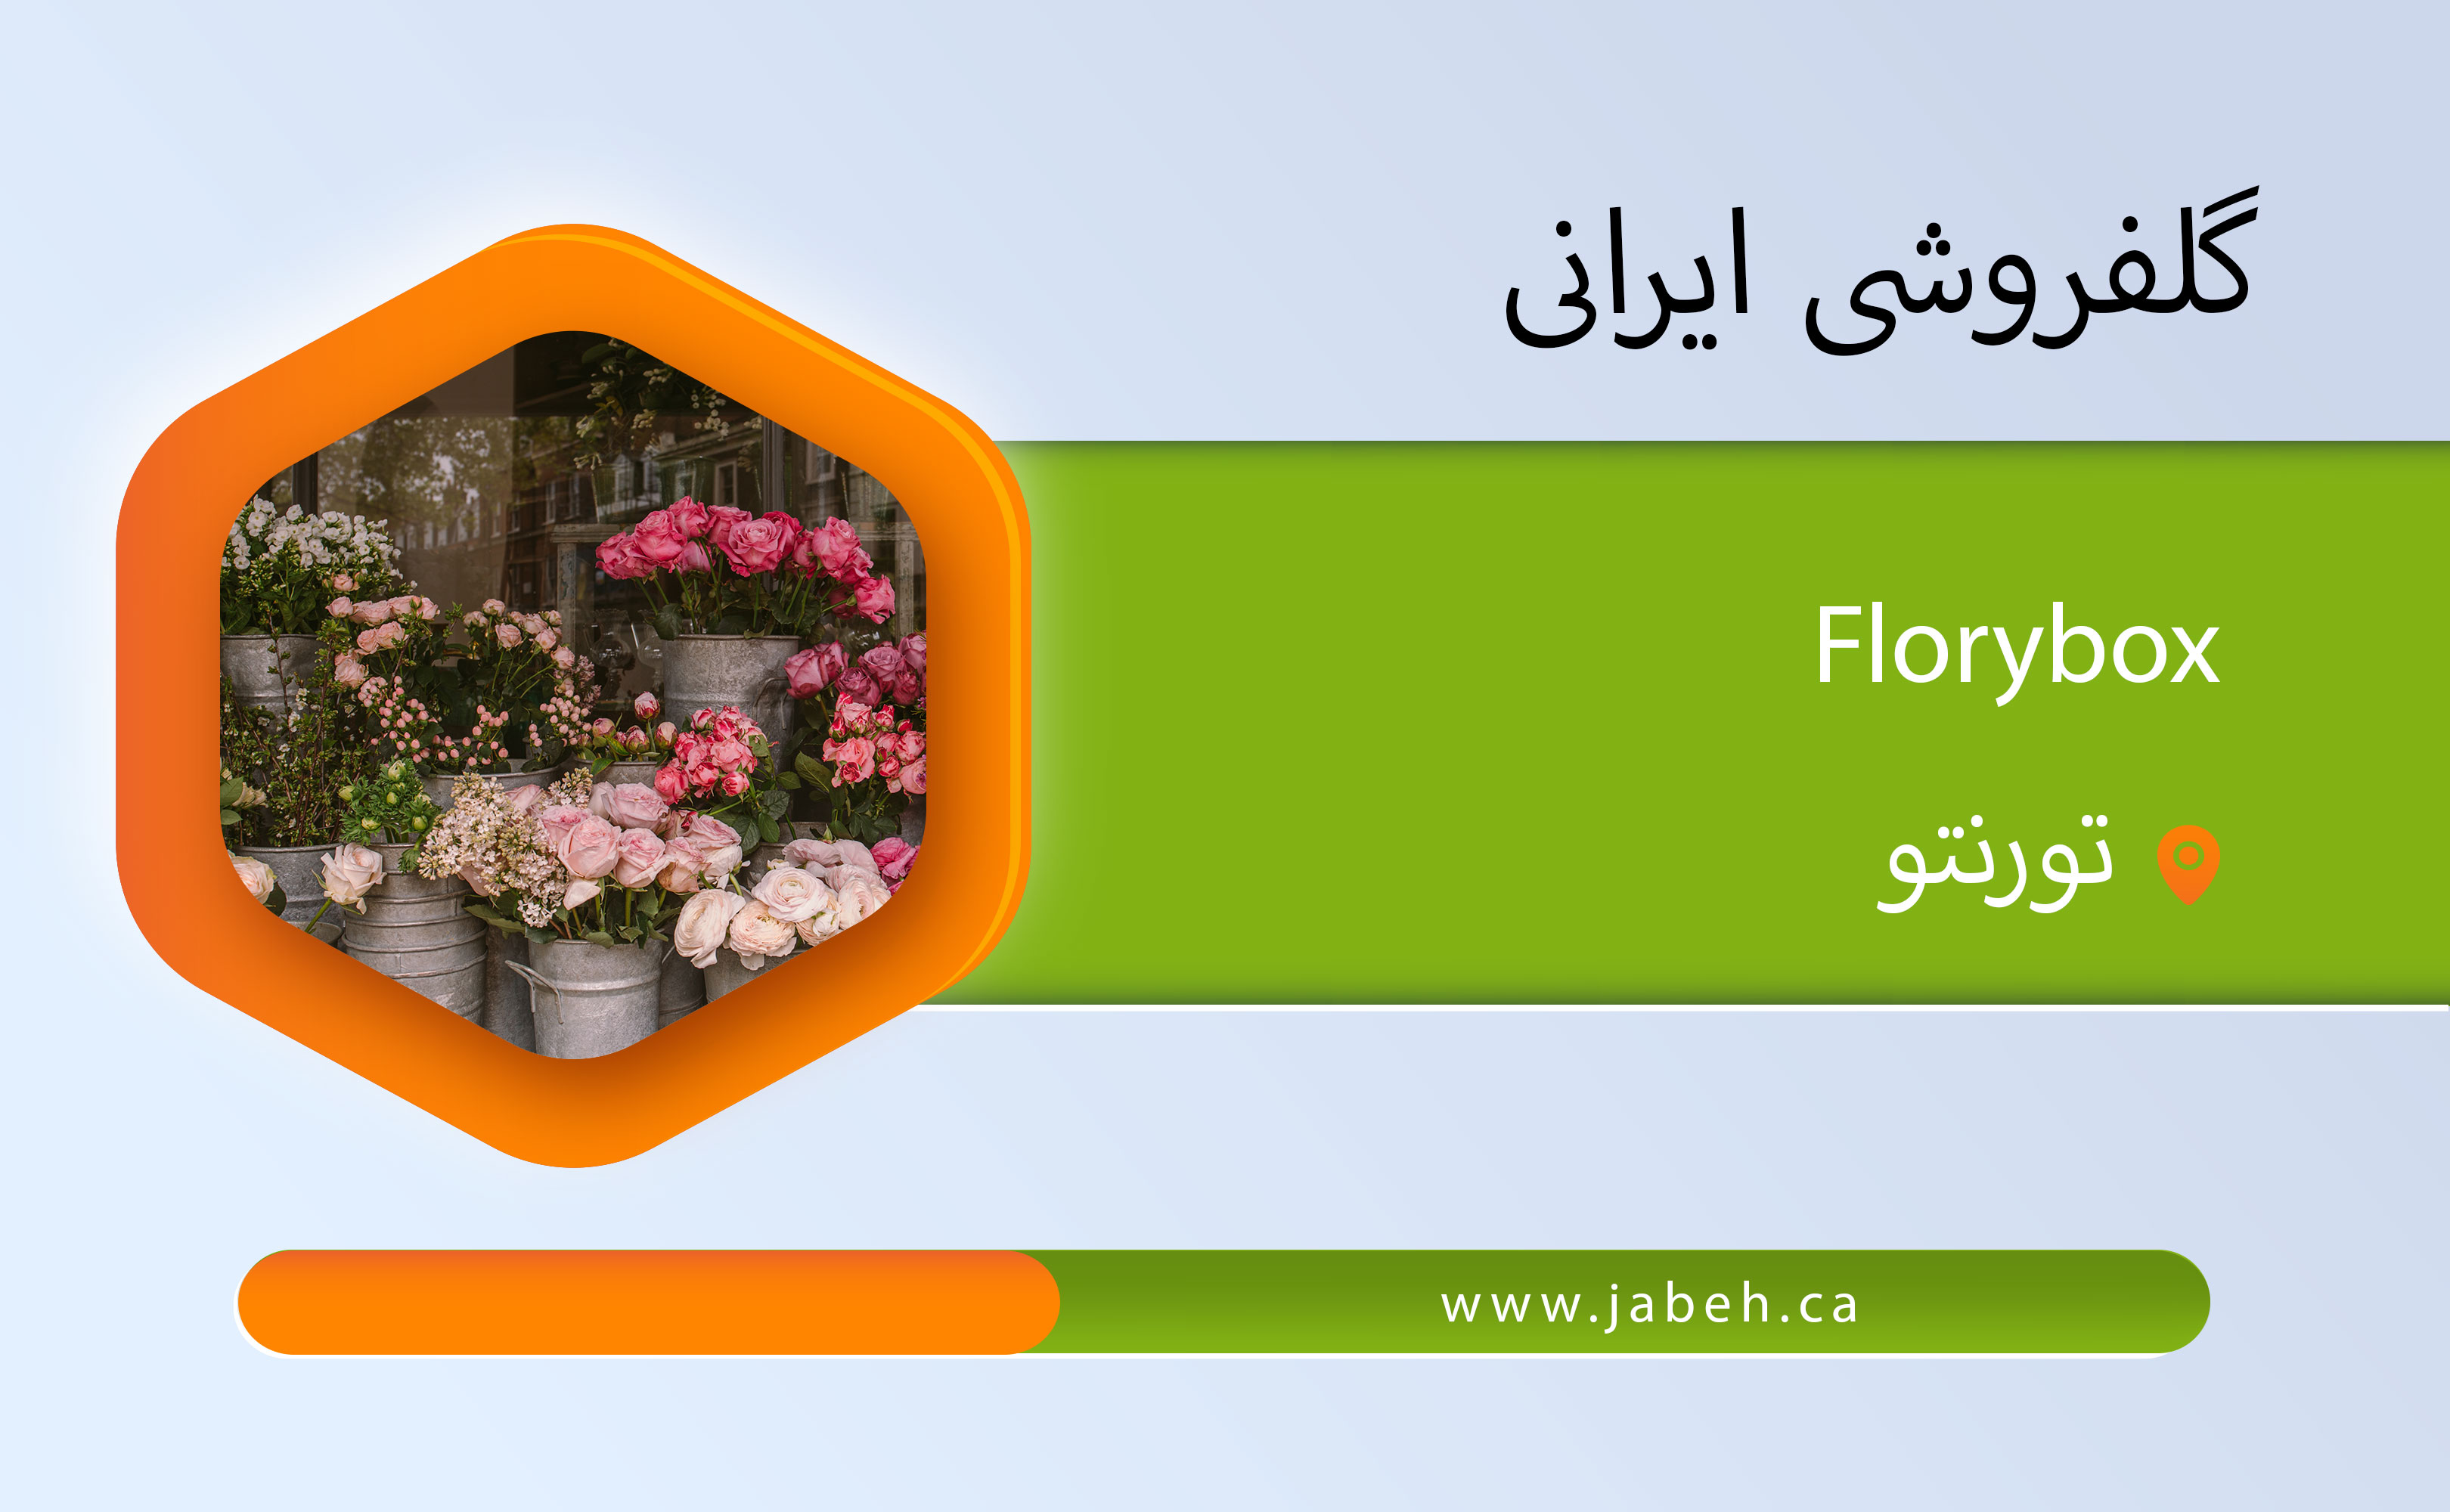 گل فروشی ایرانی Florybox در تورنتو